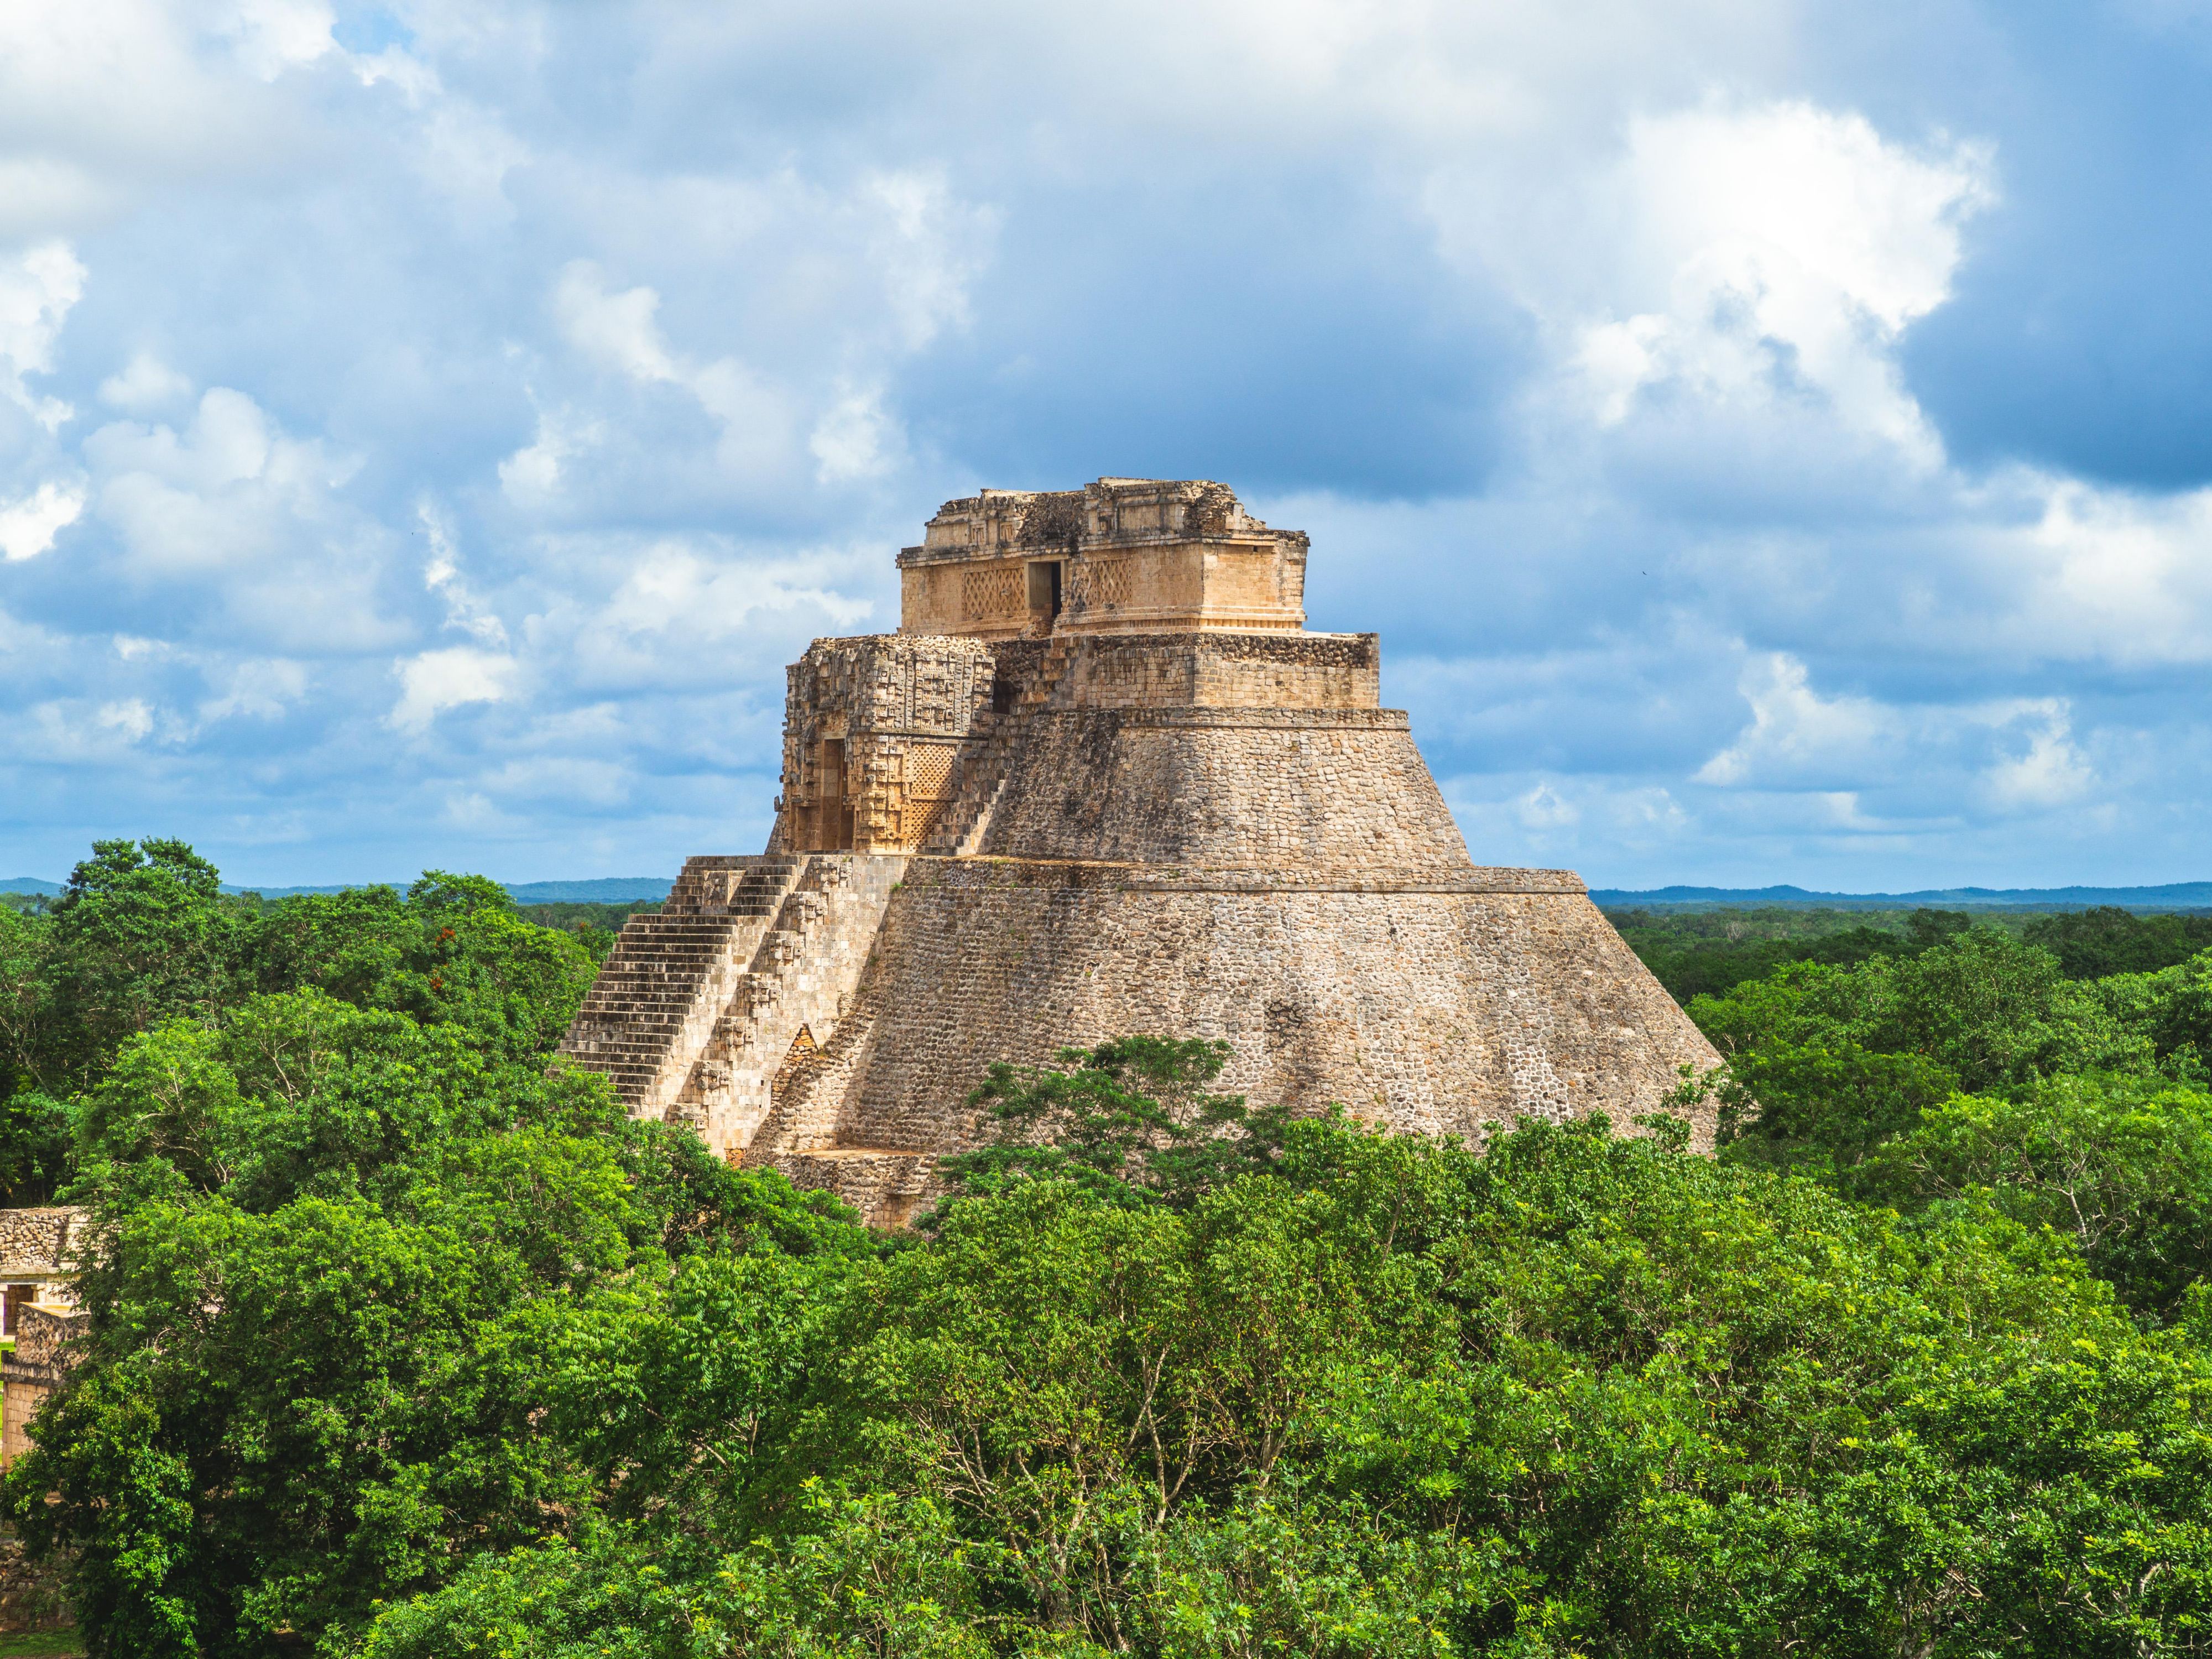 Descubra la belleza y la historia de Mérida desde nuestra estratégica ubicación. Nuestro hotel está a pocos minutos del aeropuerto internacional y del bullicioso distrito financiero. Estamos a un viaje de 1 día de las más increíbles playas y de los sitios arqueológicos más famosos de Yucatán, incluyendo las ruinas Mayas de Chichén-Itzá.